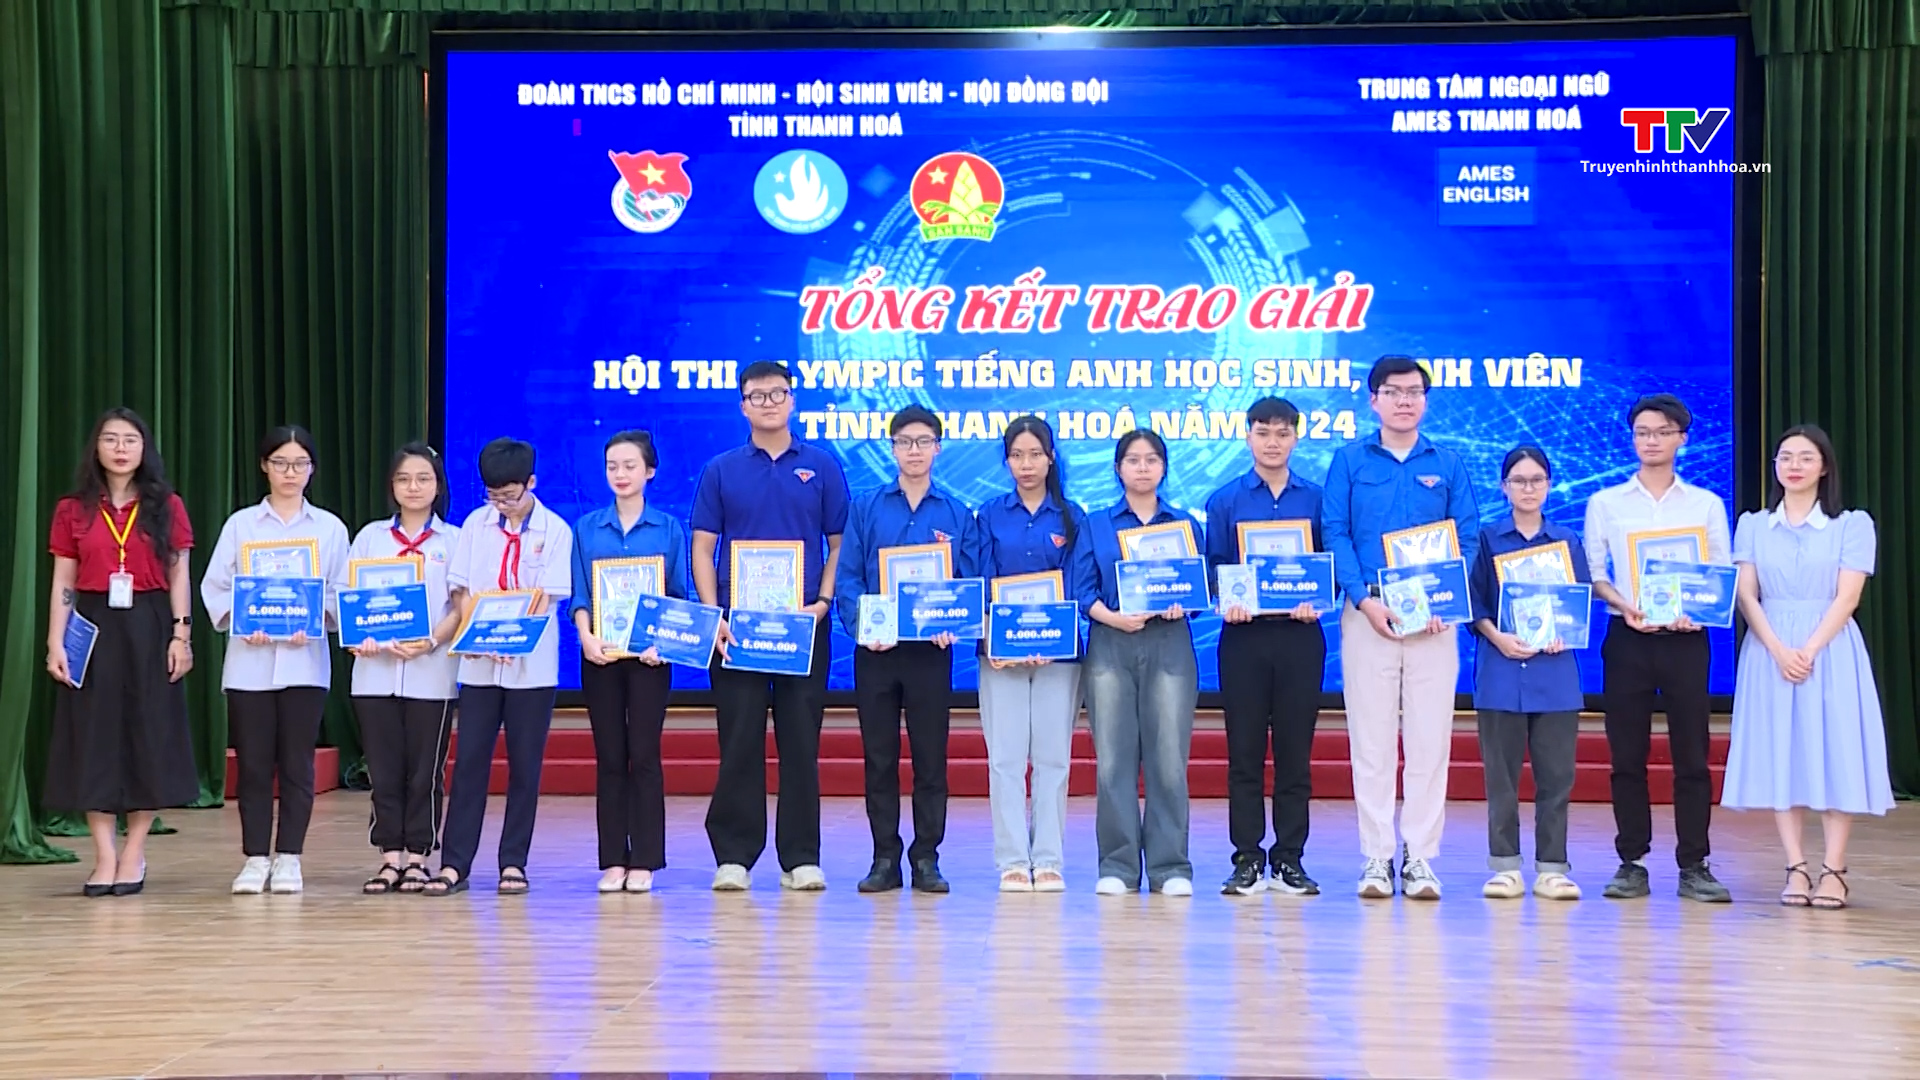 Chung kết cuộc thi Olympic Tiếng Anh học sinh, sinh viên tỉnh Thanh Hóa năm 2024- Ảnh 1.